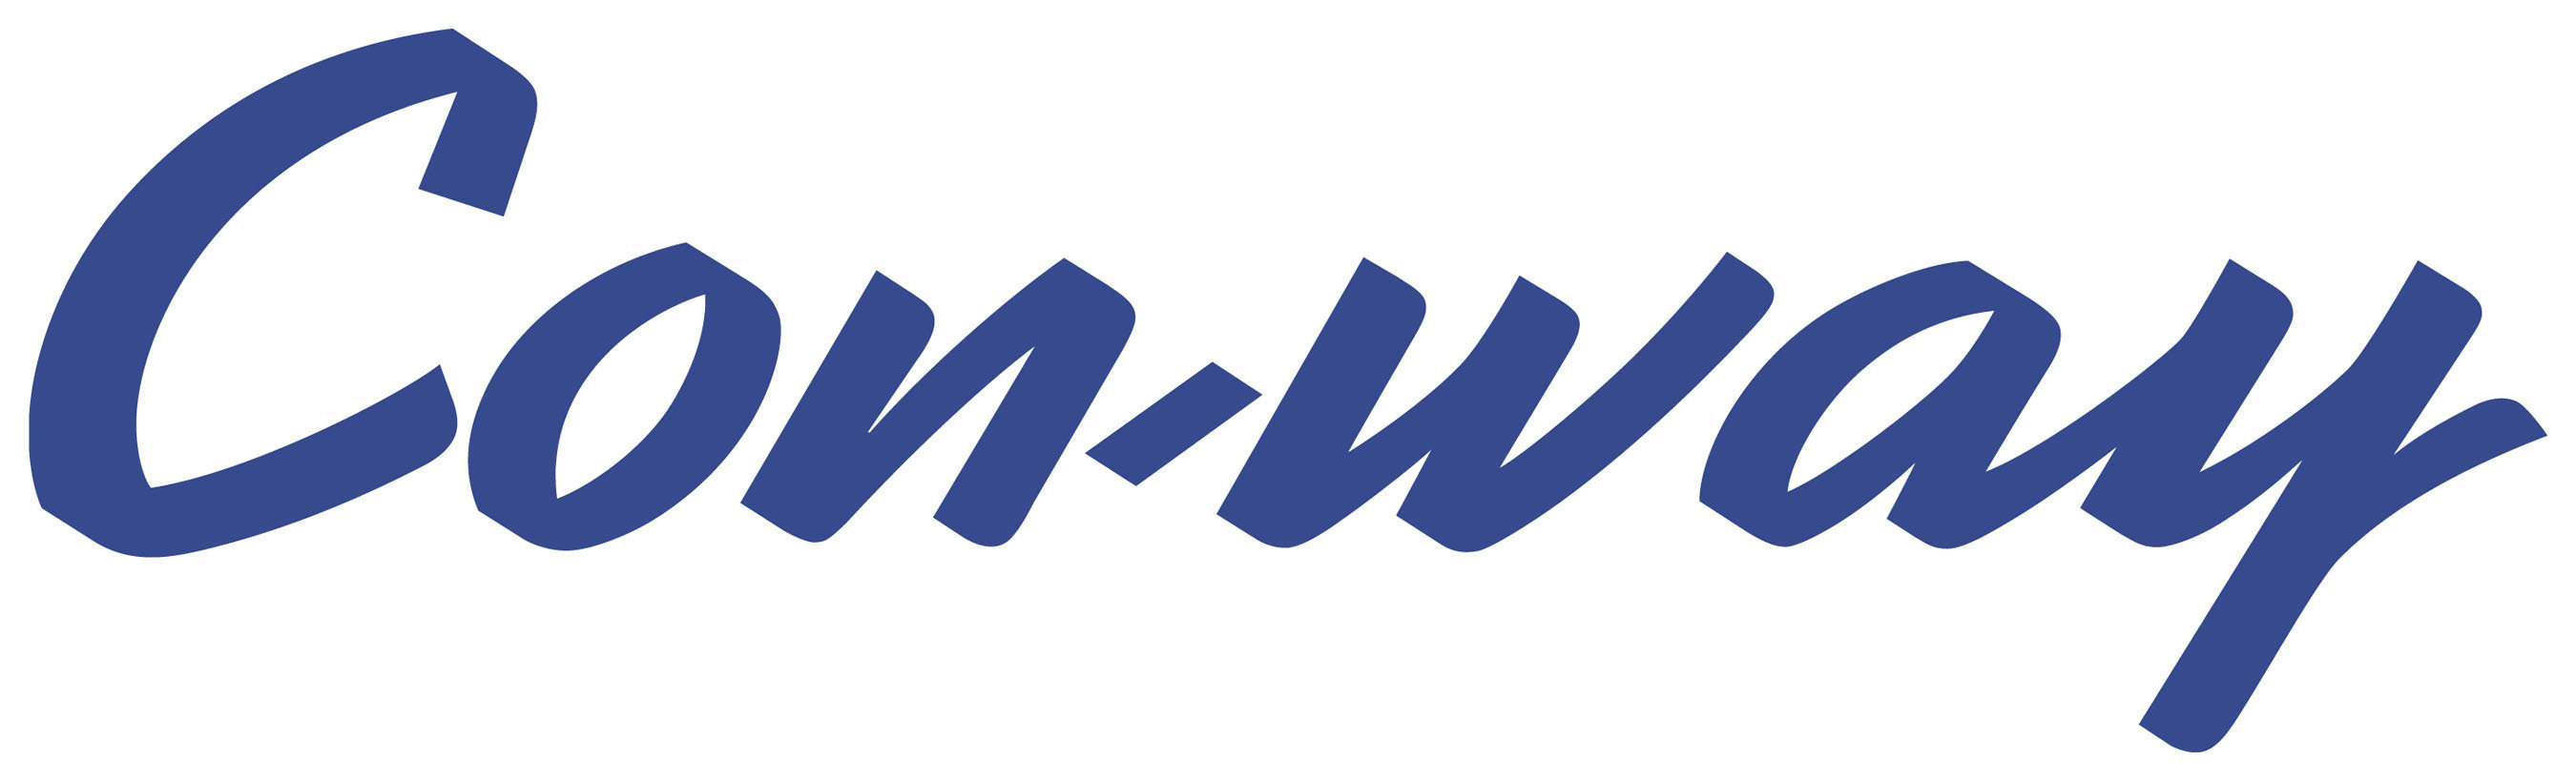 Con-way Inc. logo.